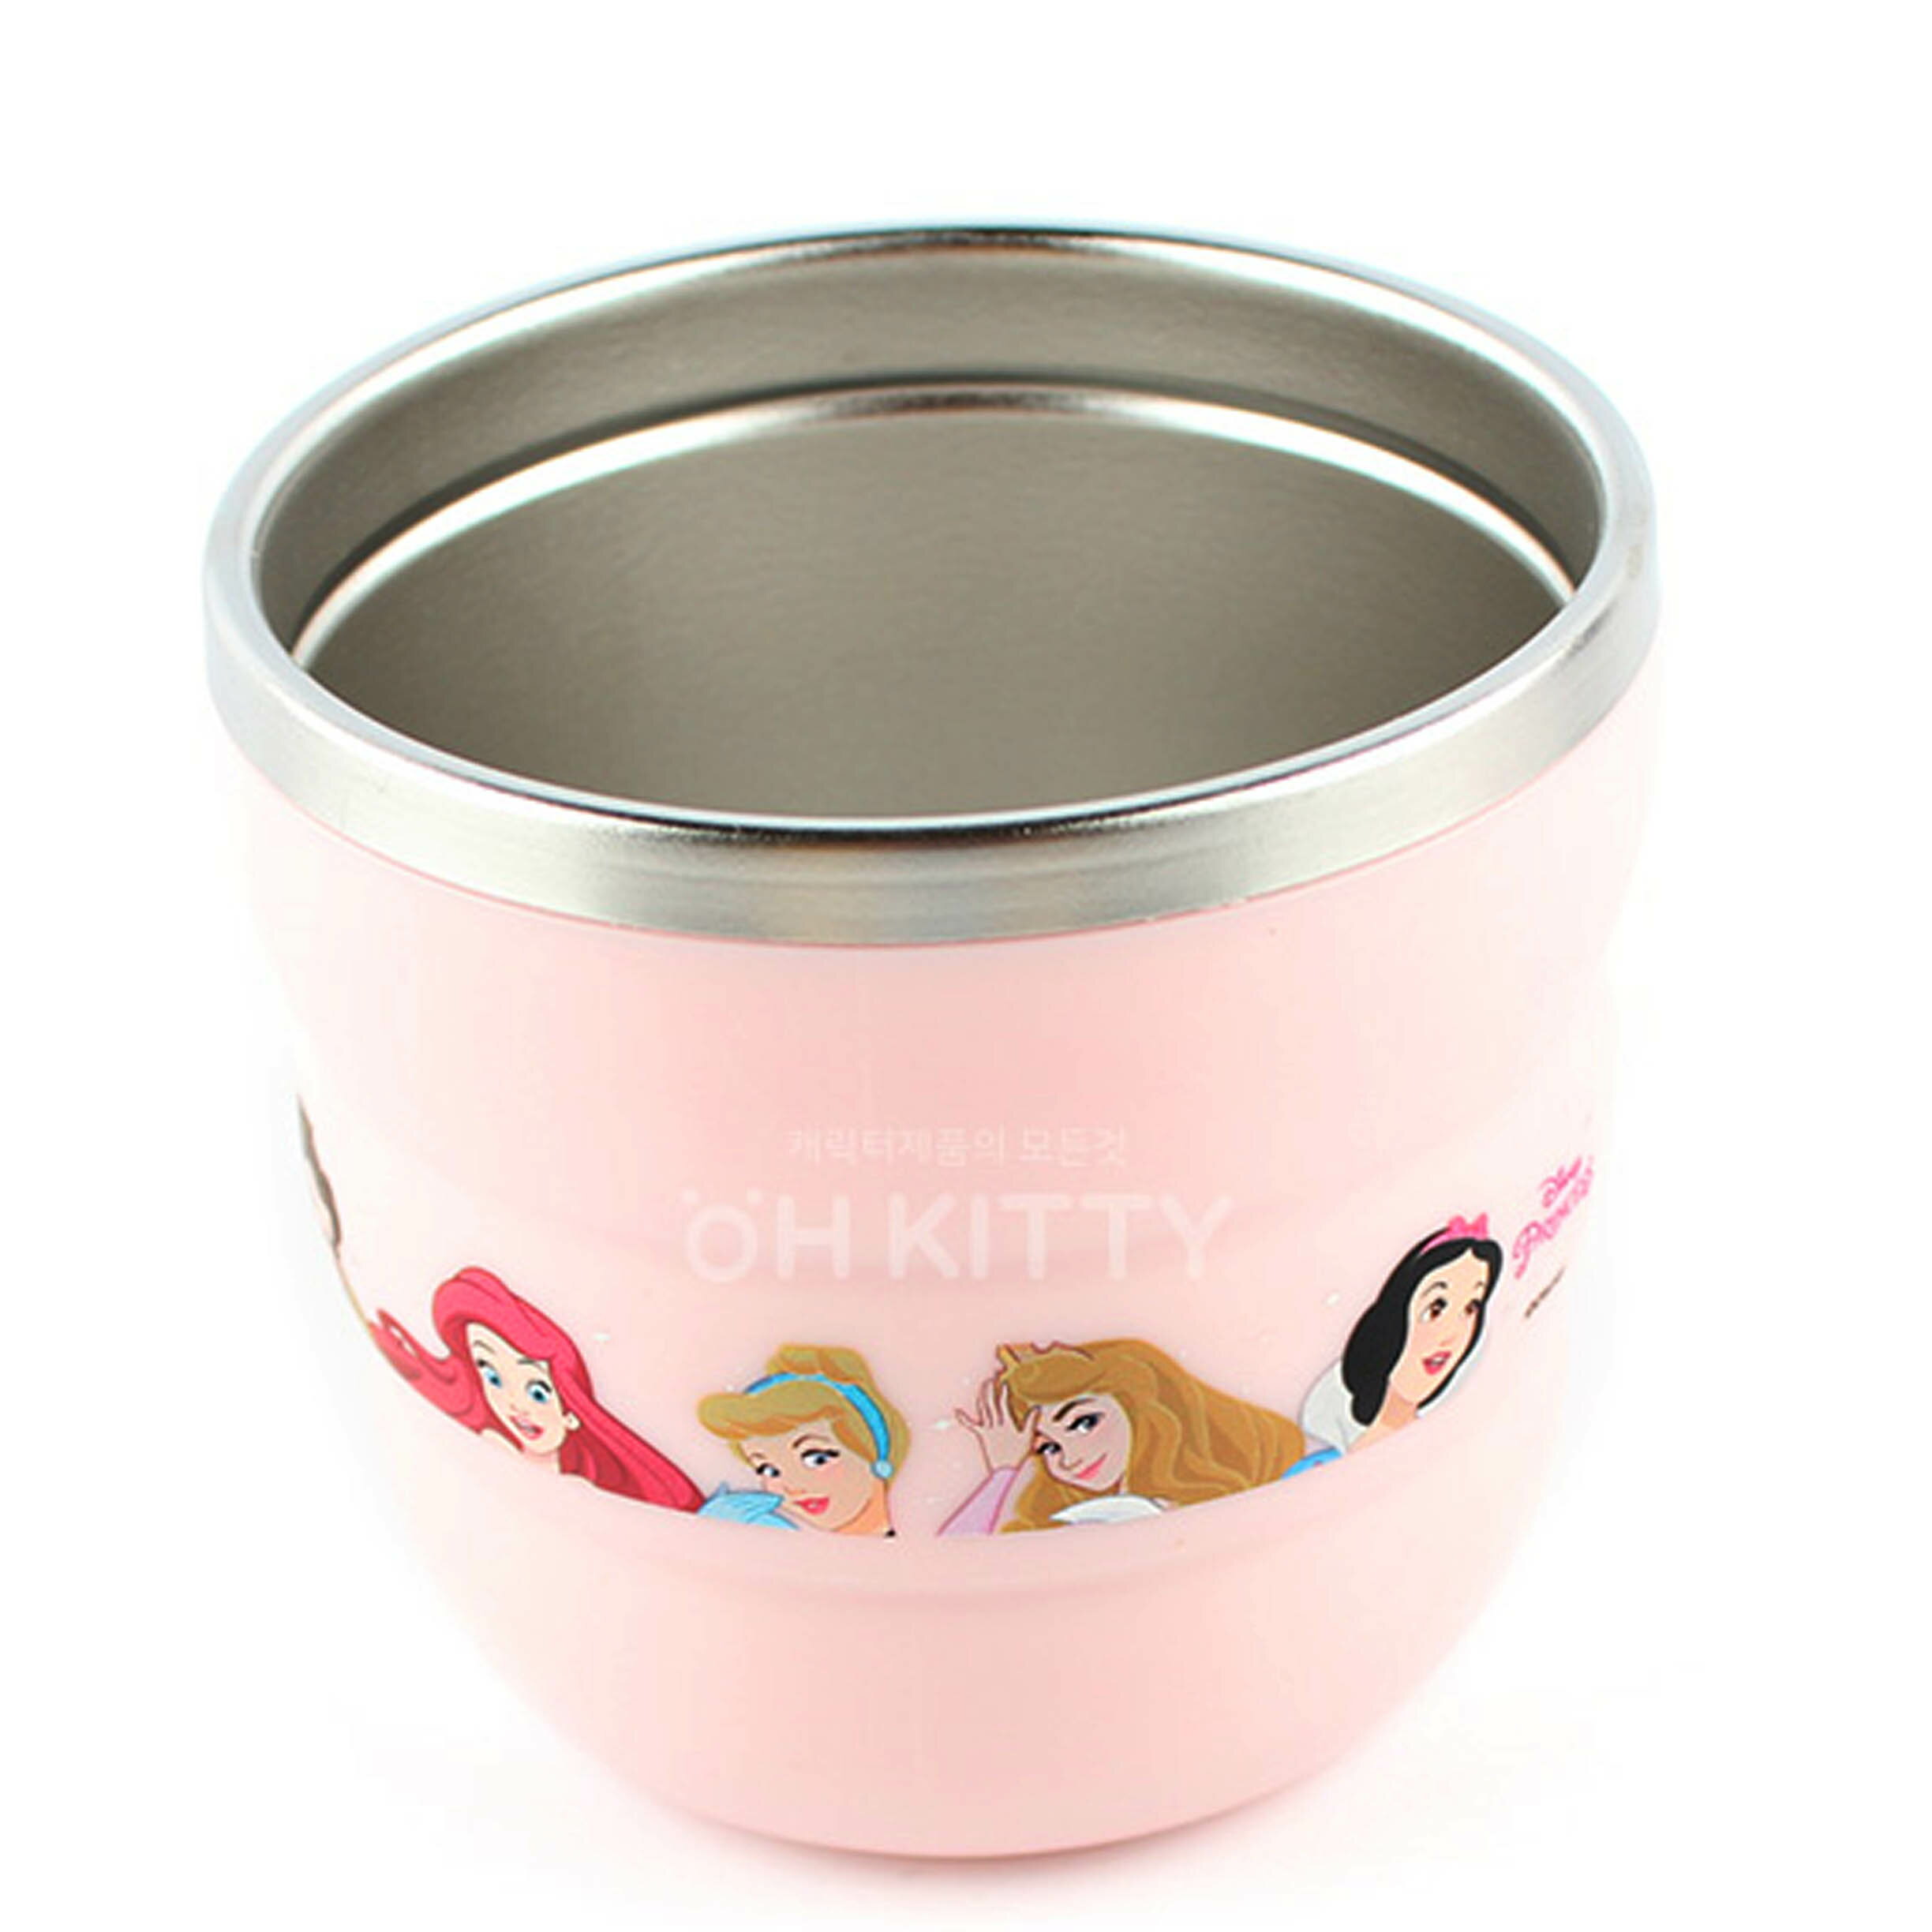 不鏽鋼杯-公主系列 迪士尼 DISNEY LILFANT 韓國進口正版授權